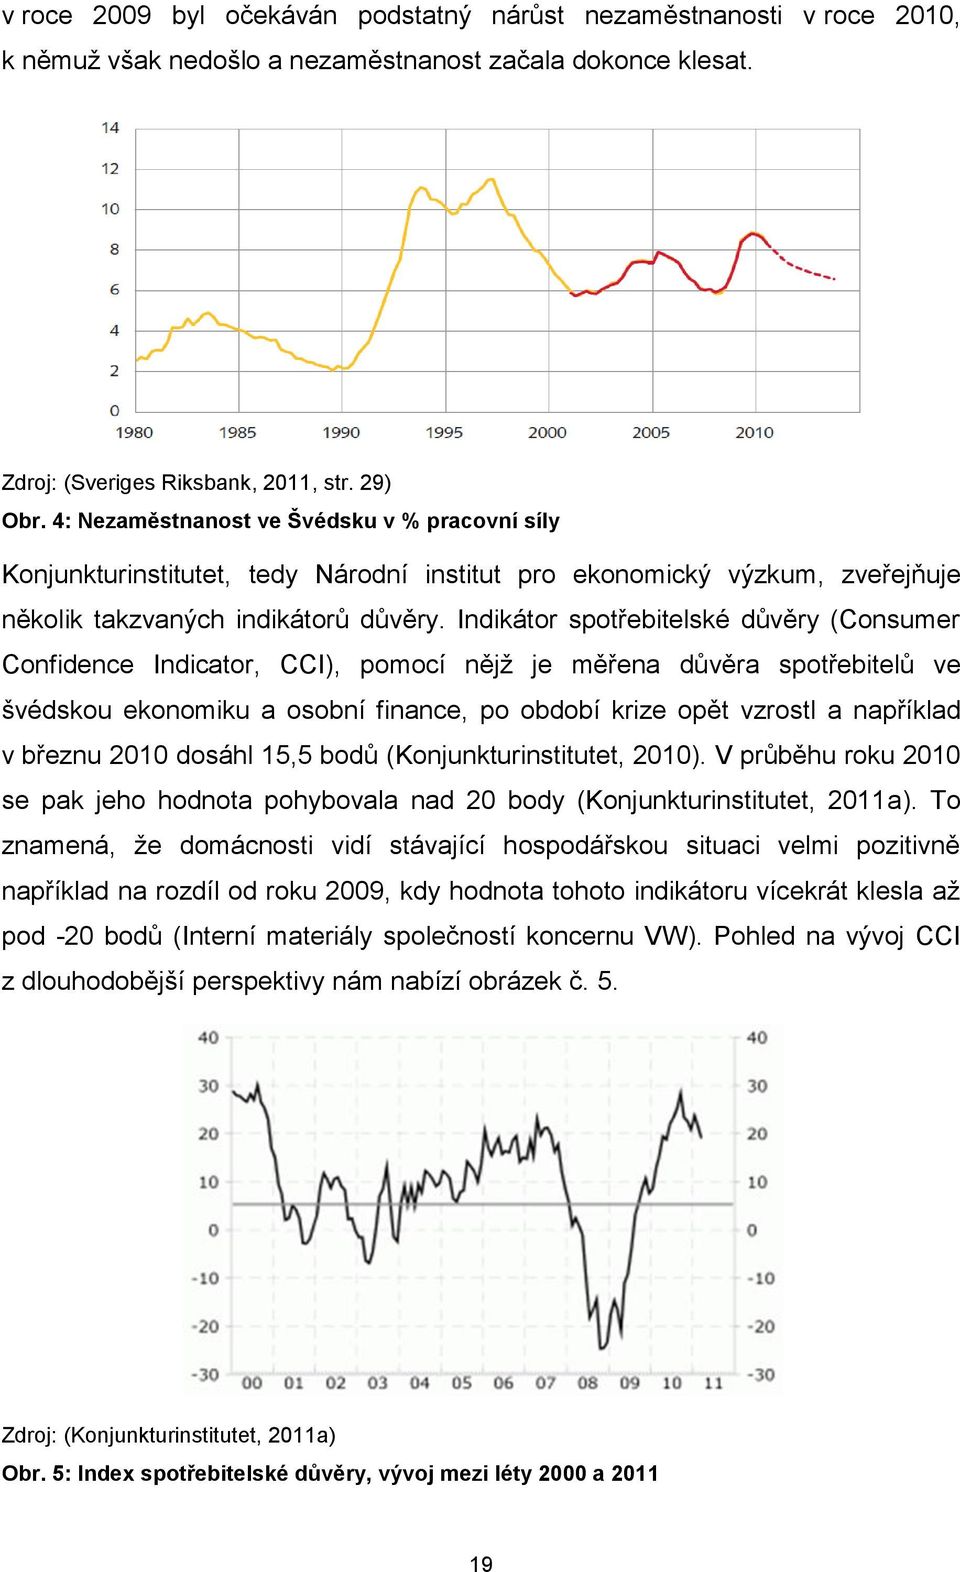 Indikátor spotřebitelské důvěry (Consumer Confidence Indicator, CCI), pomocí nějţ je měřena důvěra spotřebitelů ve švédskou ekonomiku a osobní finance, po období krize opět vzrostl a například v